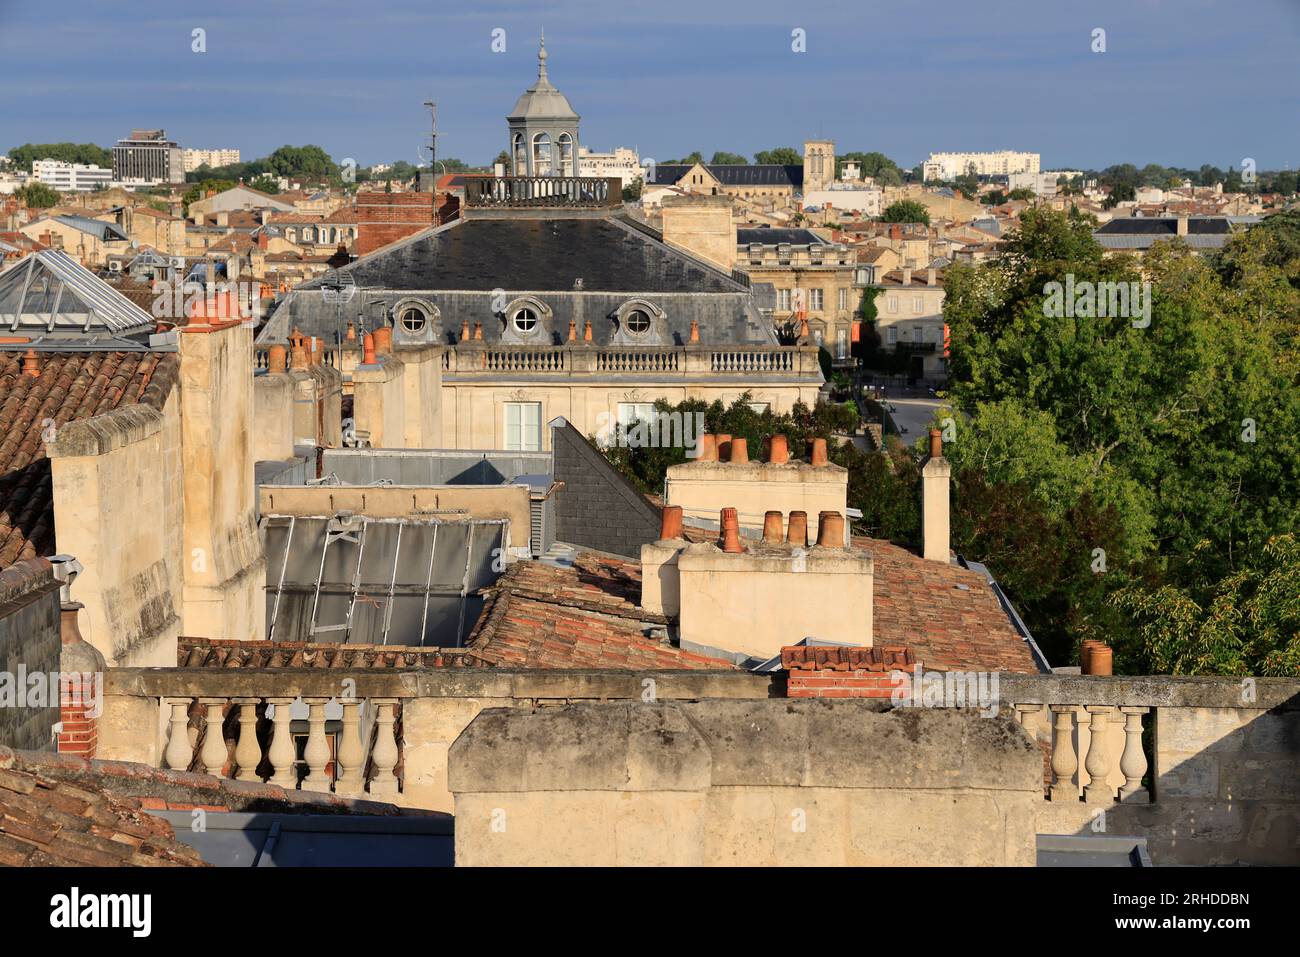 Cheminées sur les toits de Bordeaux, un aspect méconnu de la ville et de son architecture. Bordeaux, Gironde, France, Europe Stock Photo